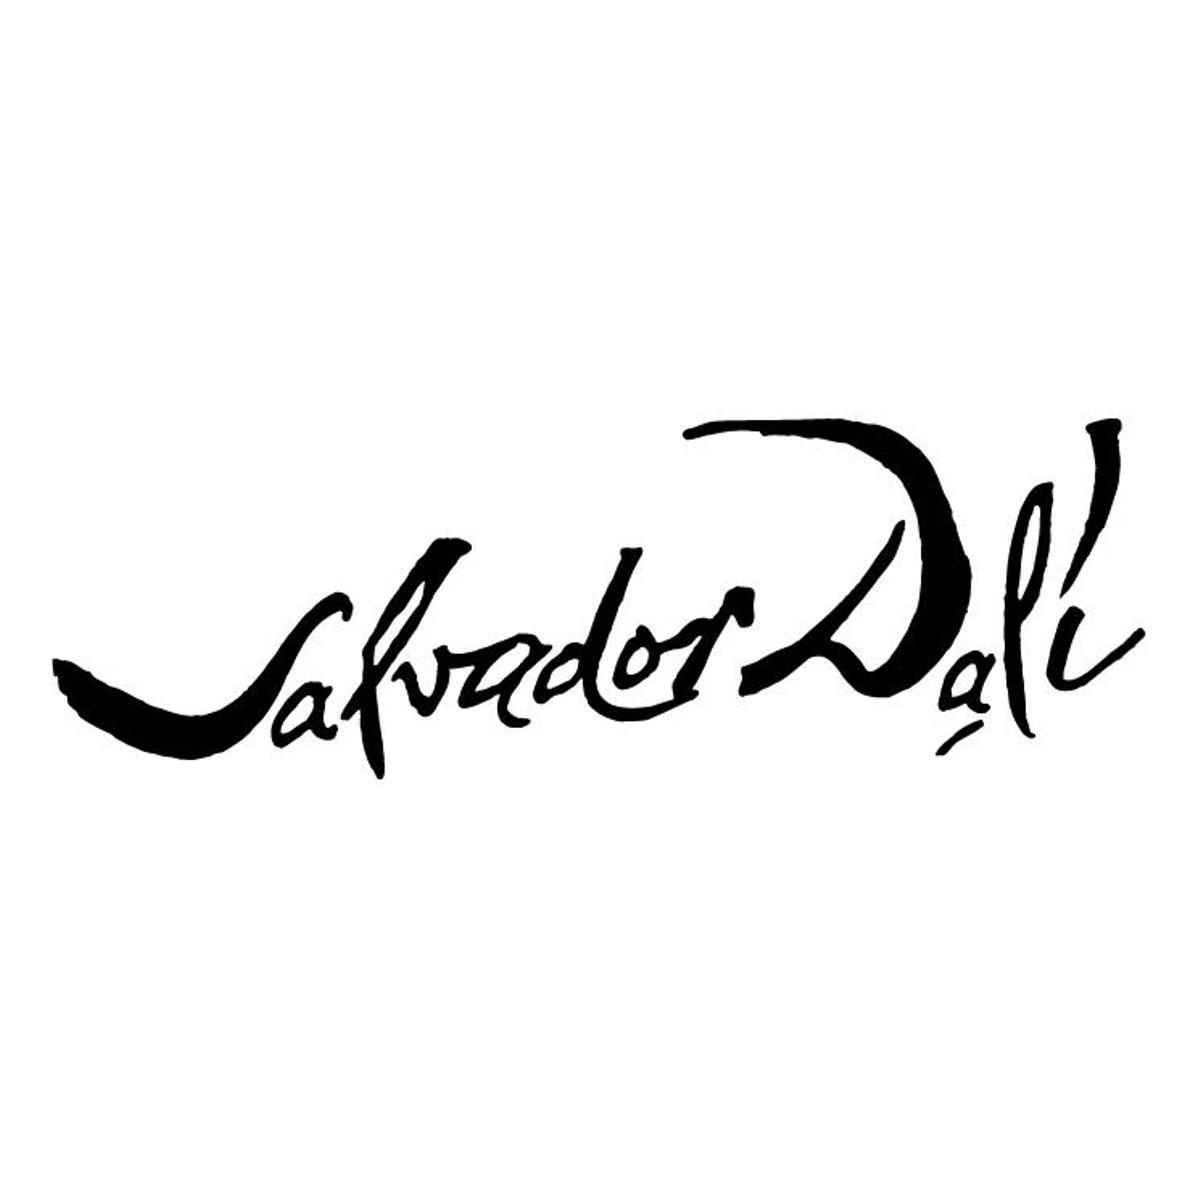 Una de las múltiples firmas de Salvador Dalí.